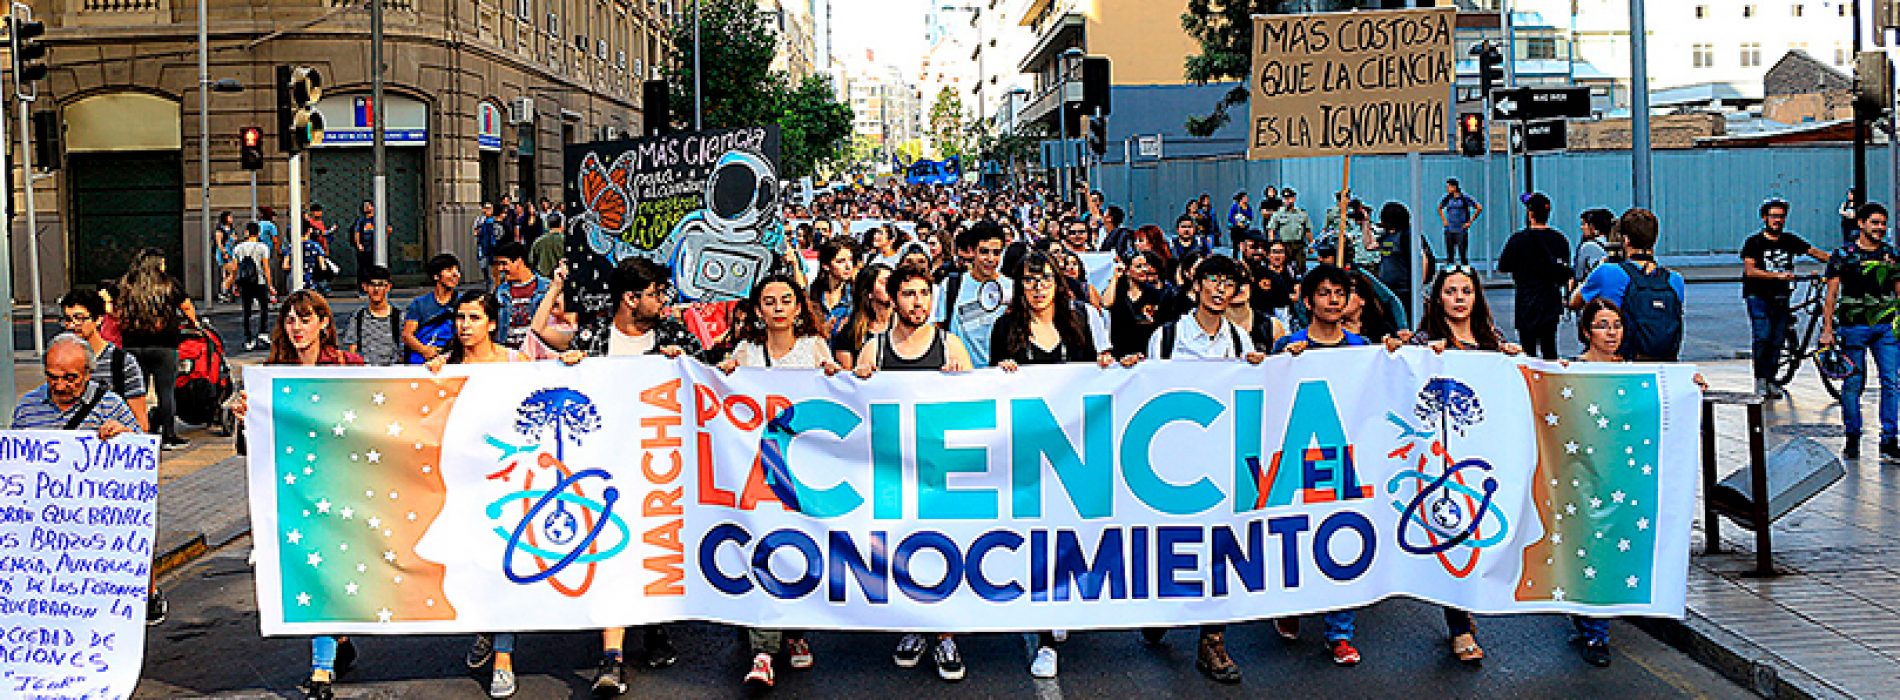 Marcha por la ciencia y el conocimiento